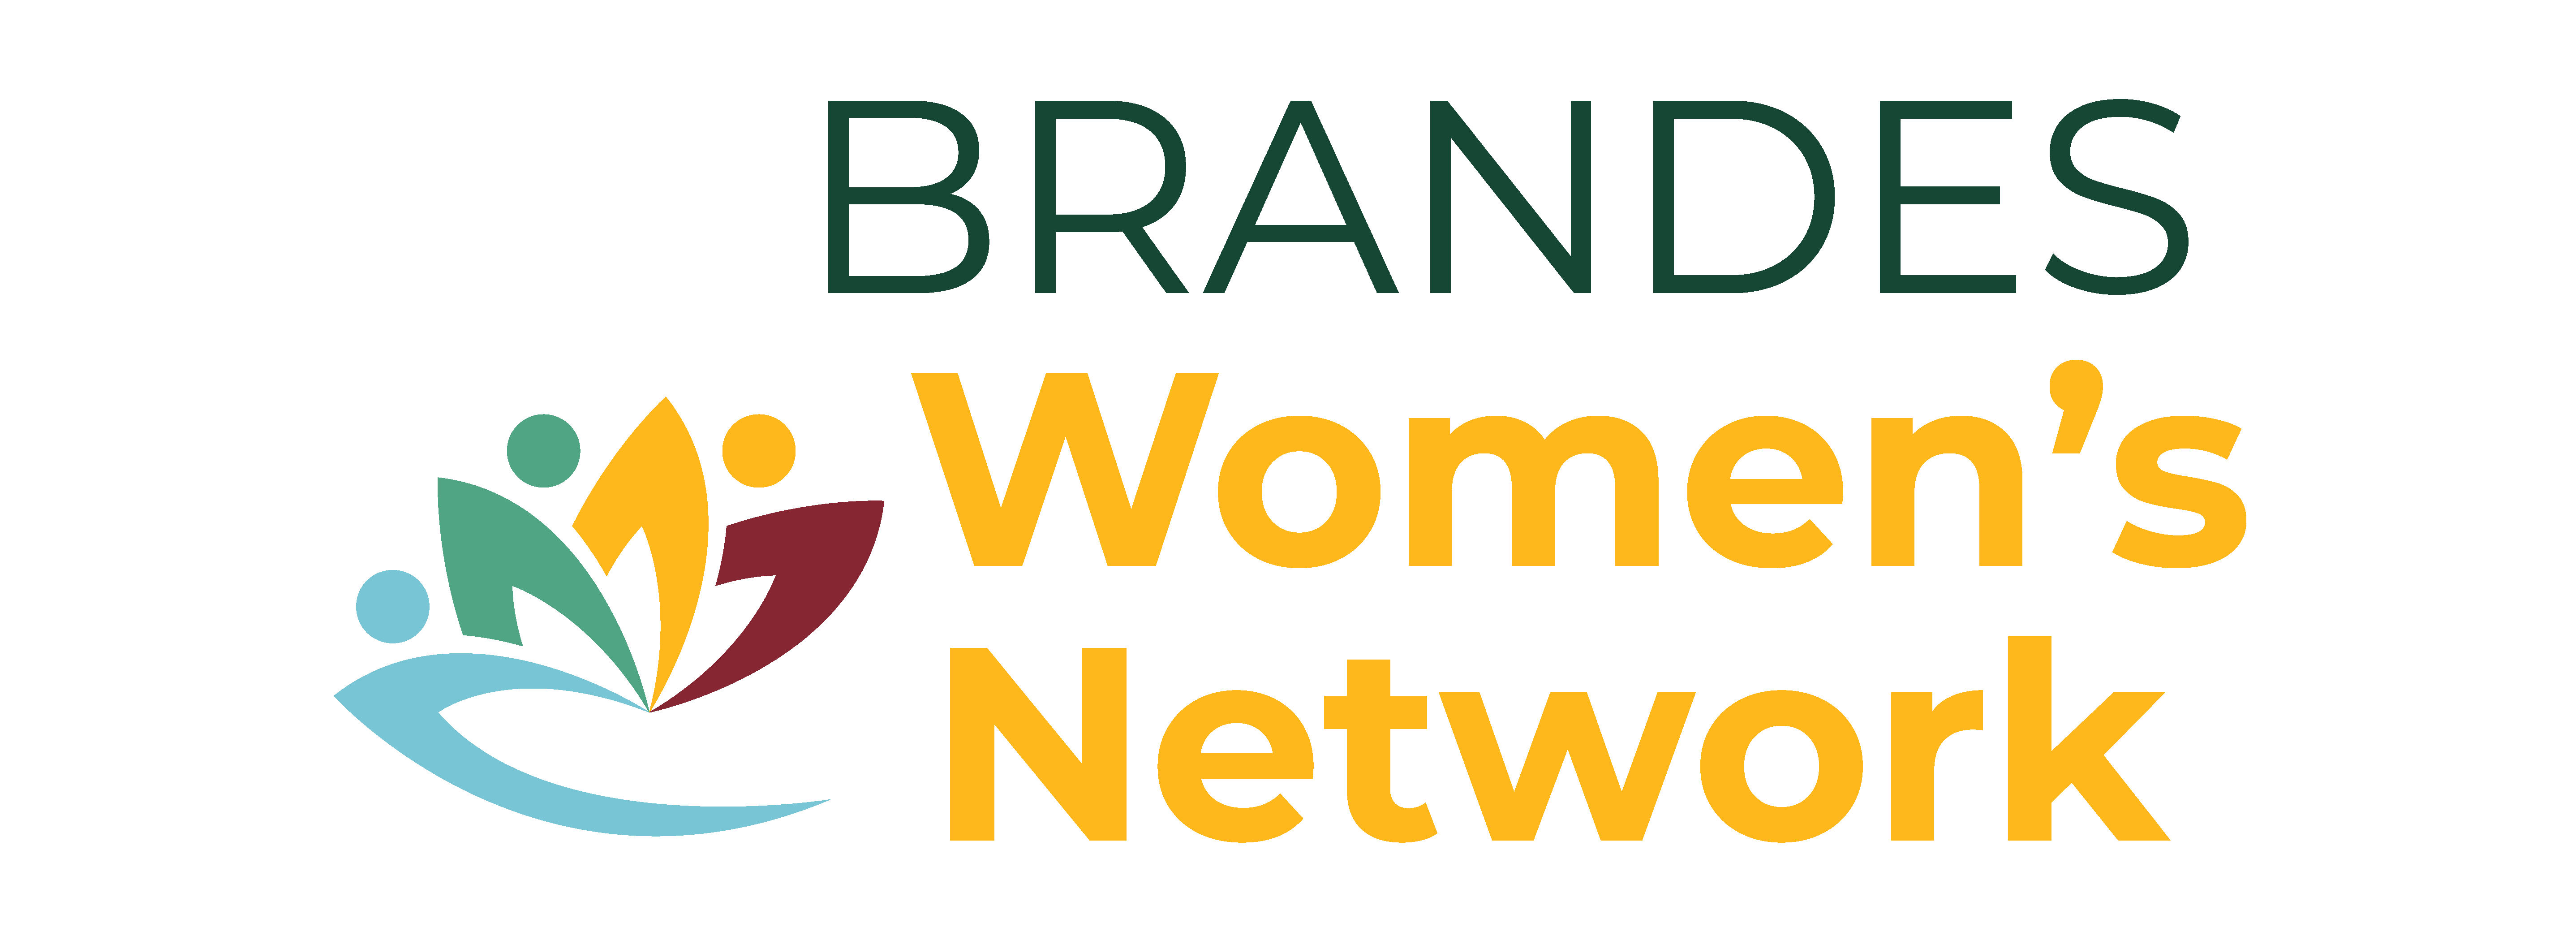 Brandes Women’s Network